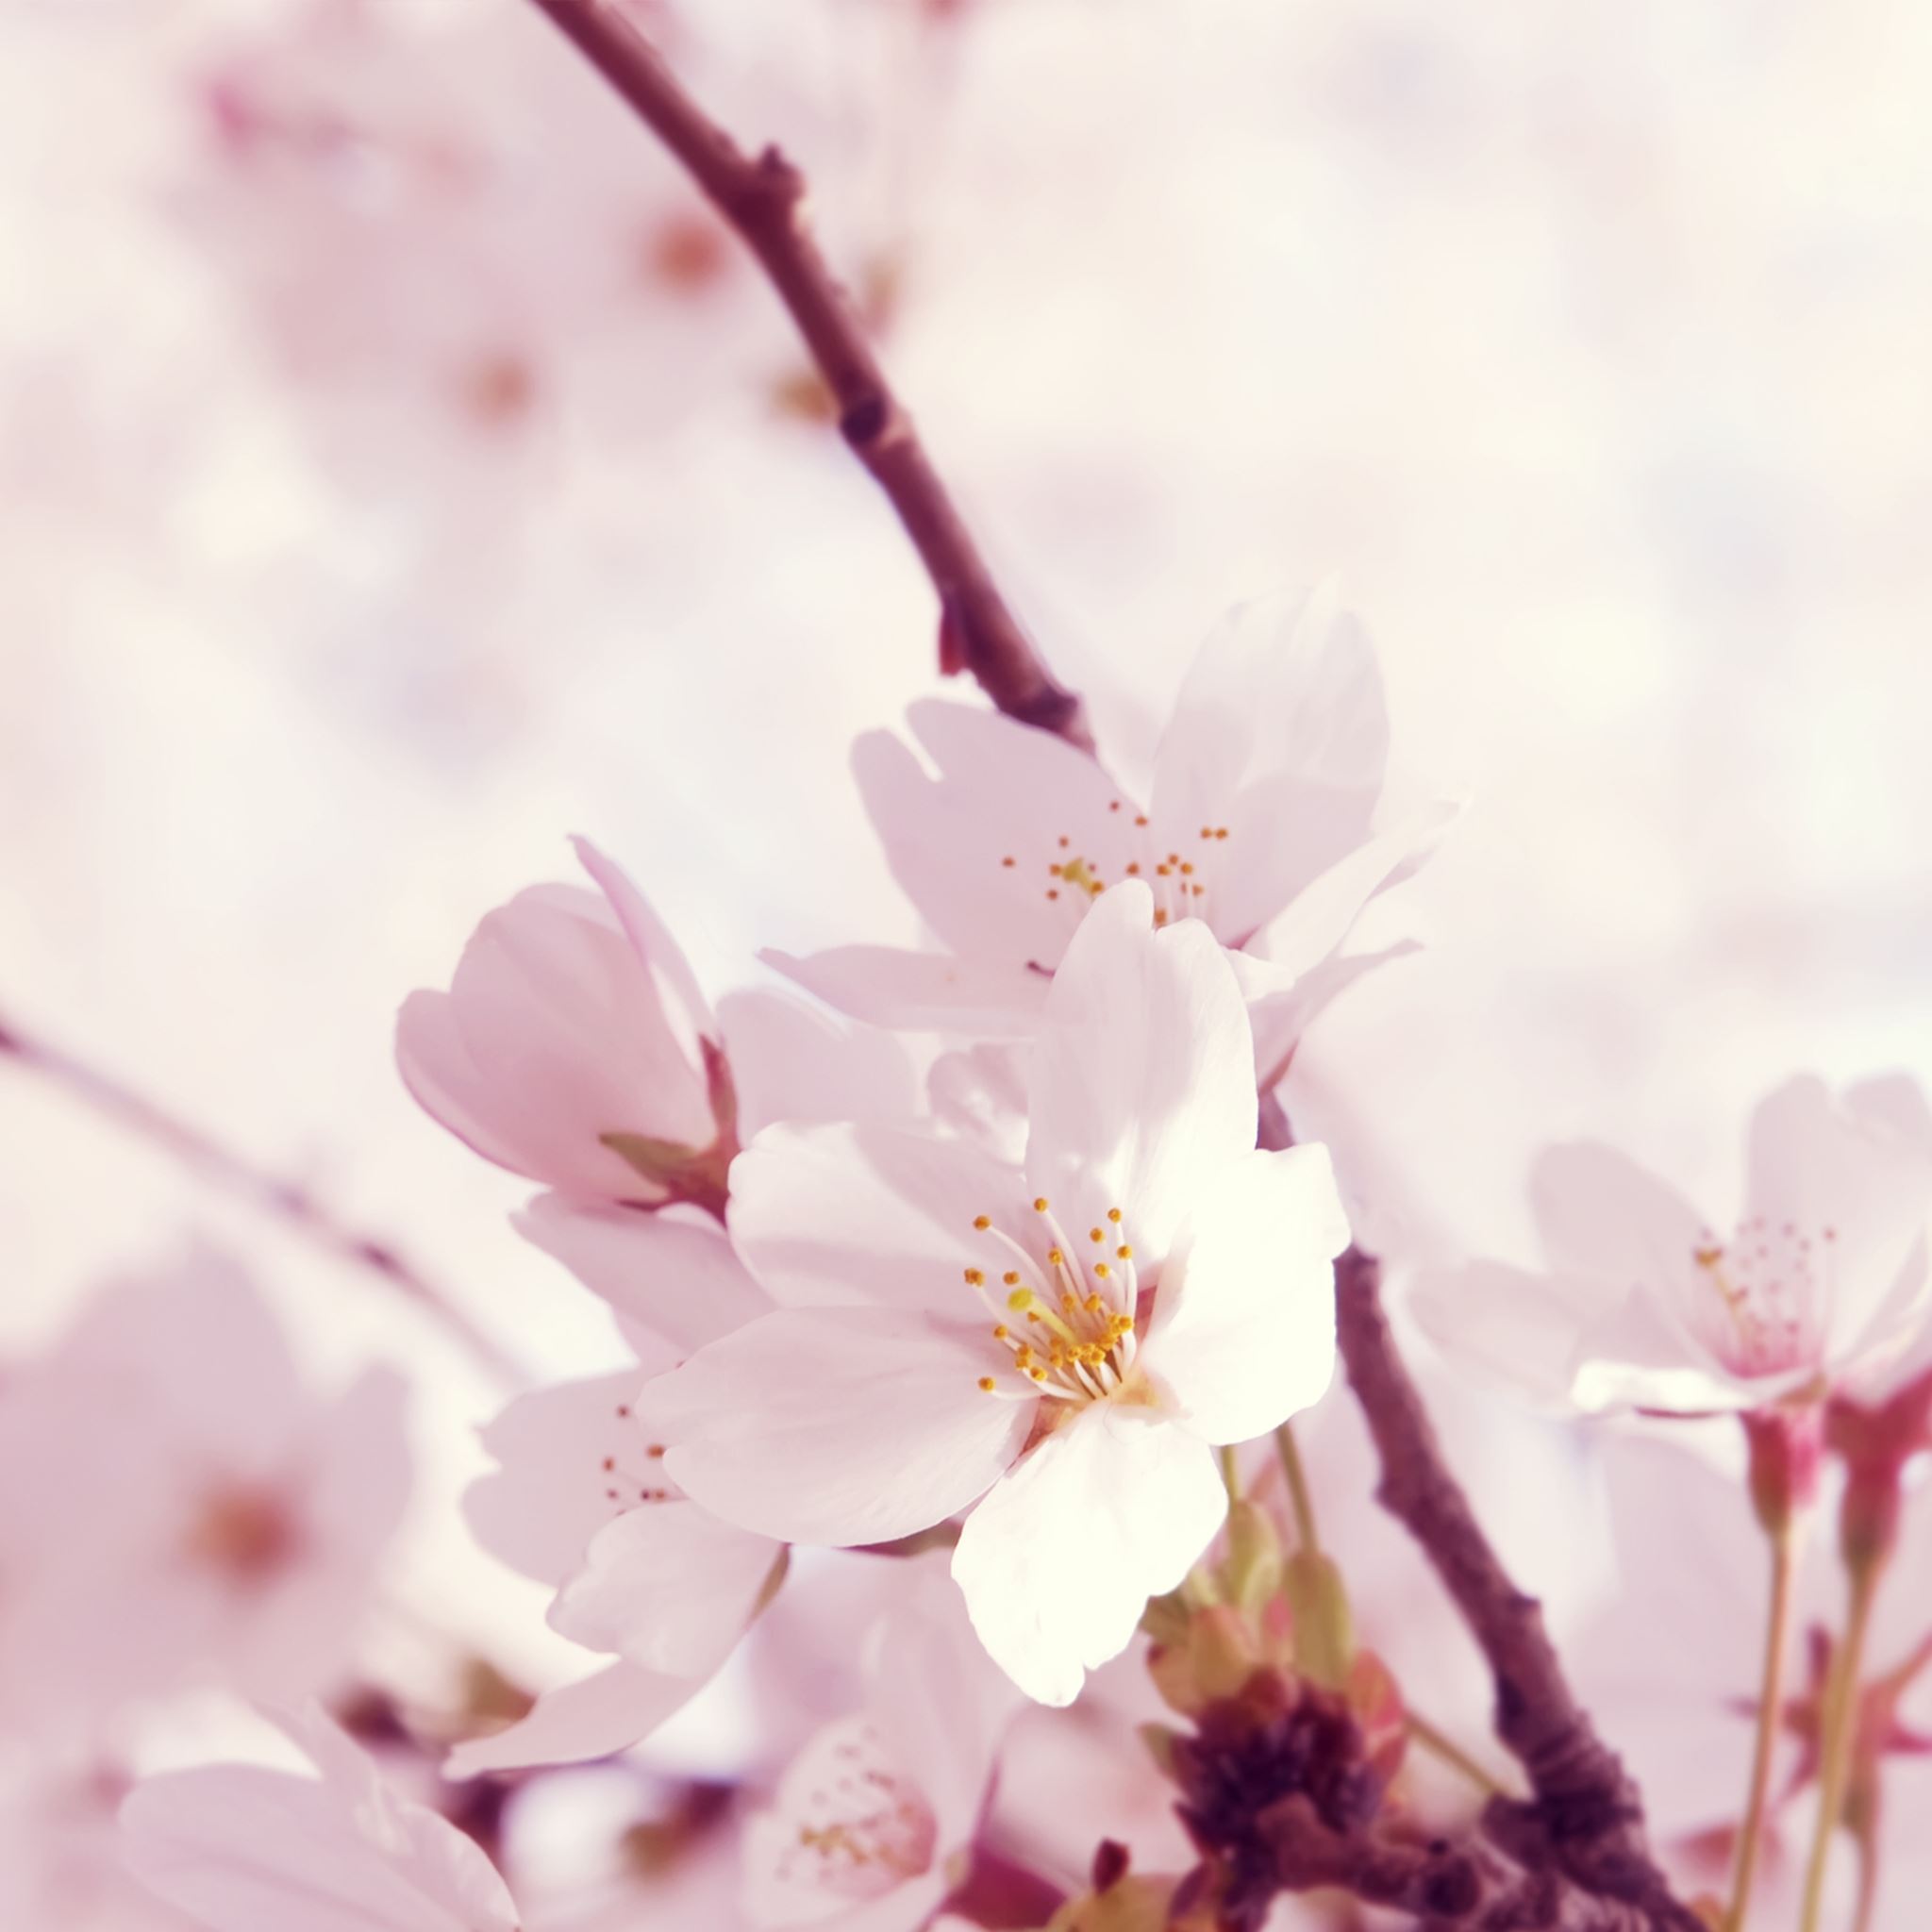 Peach blossom iPad Air wallpaper 